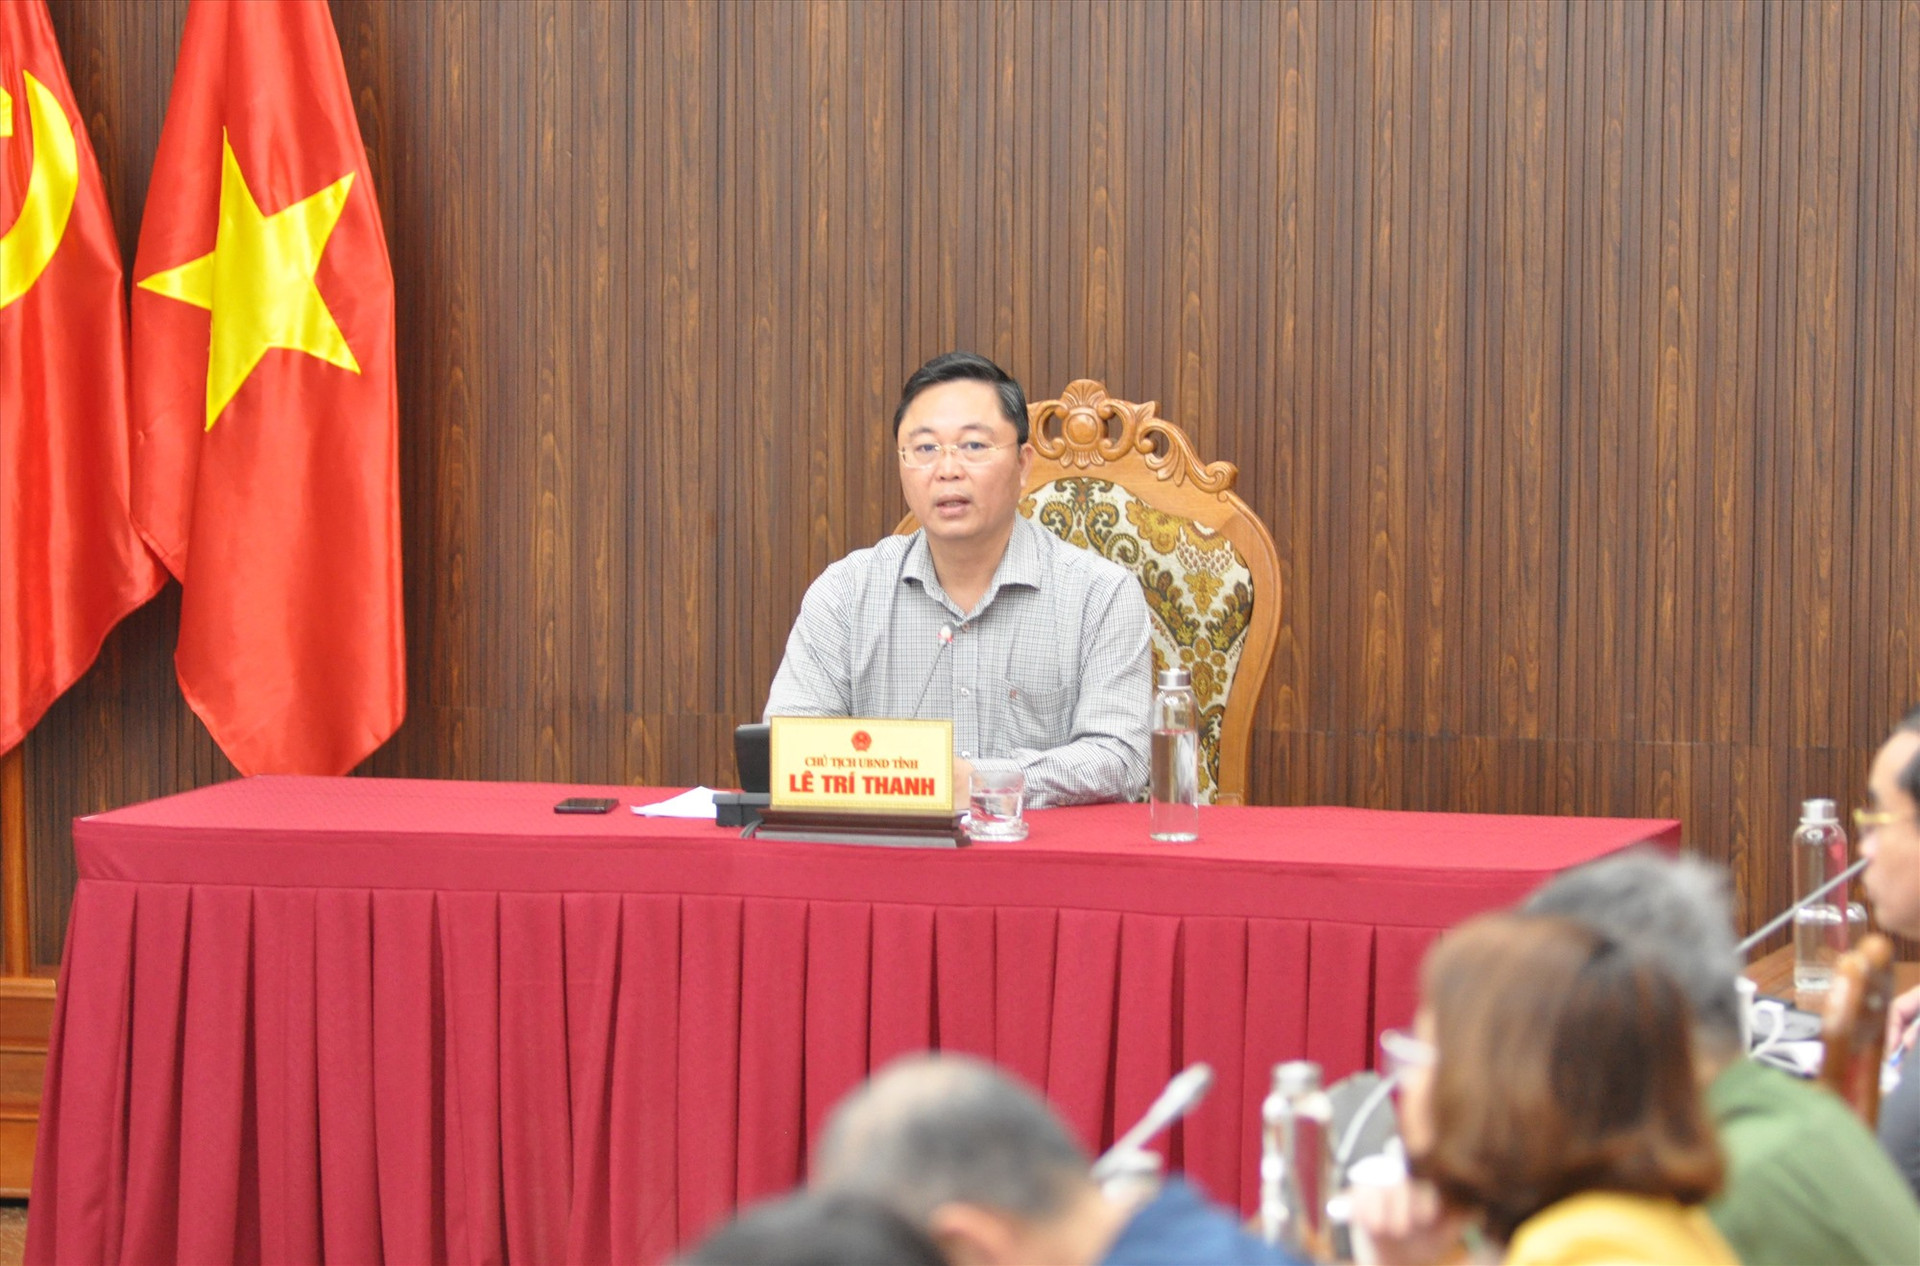 Chủ tịch UBND tỉnh Lê Trí Thanh đề nghị các ngành các cấp nỗ lực vượt khó, hoàn thành nhiệm vụ kế hoạch trong năm 2023. Ảnh: X.P